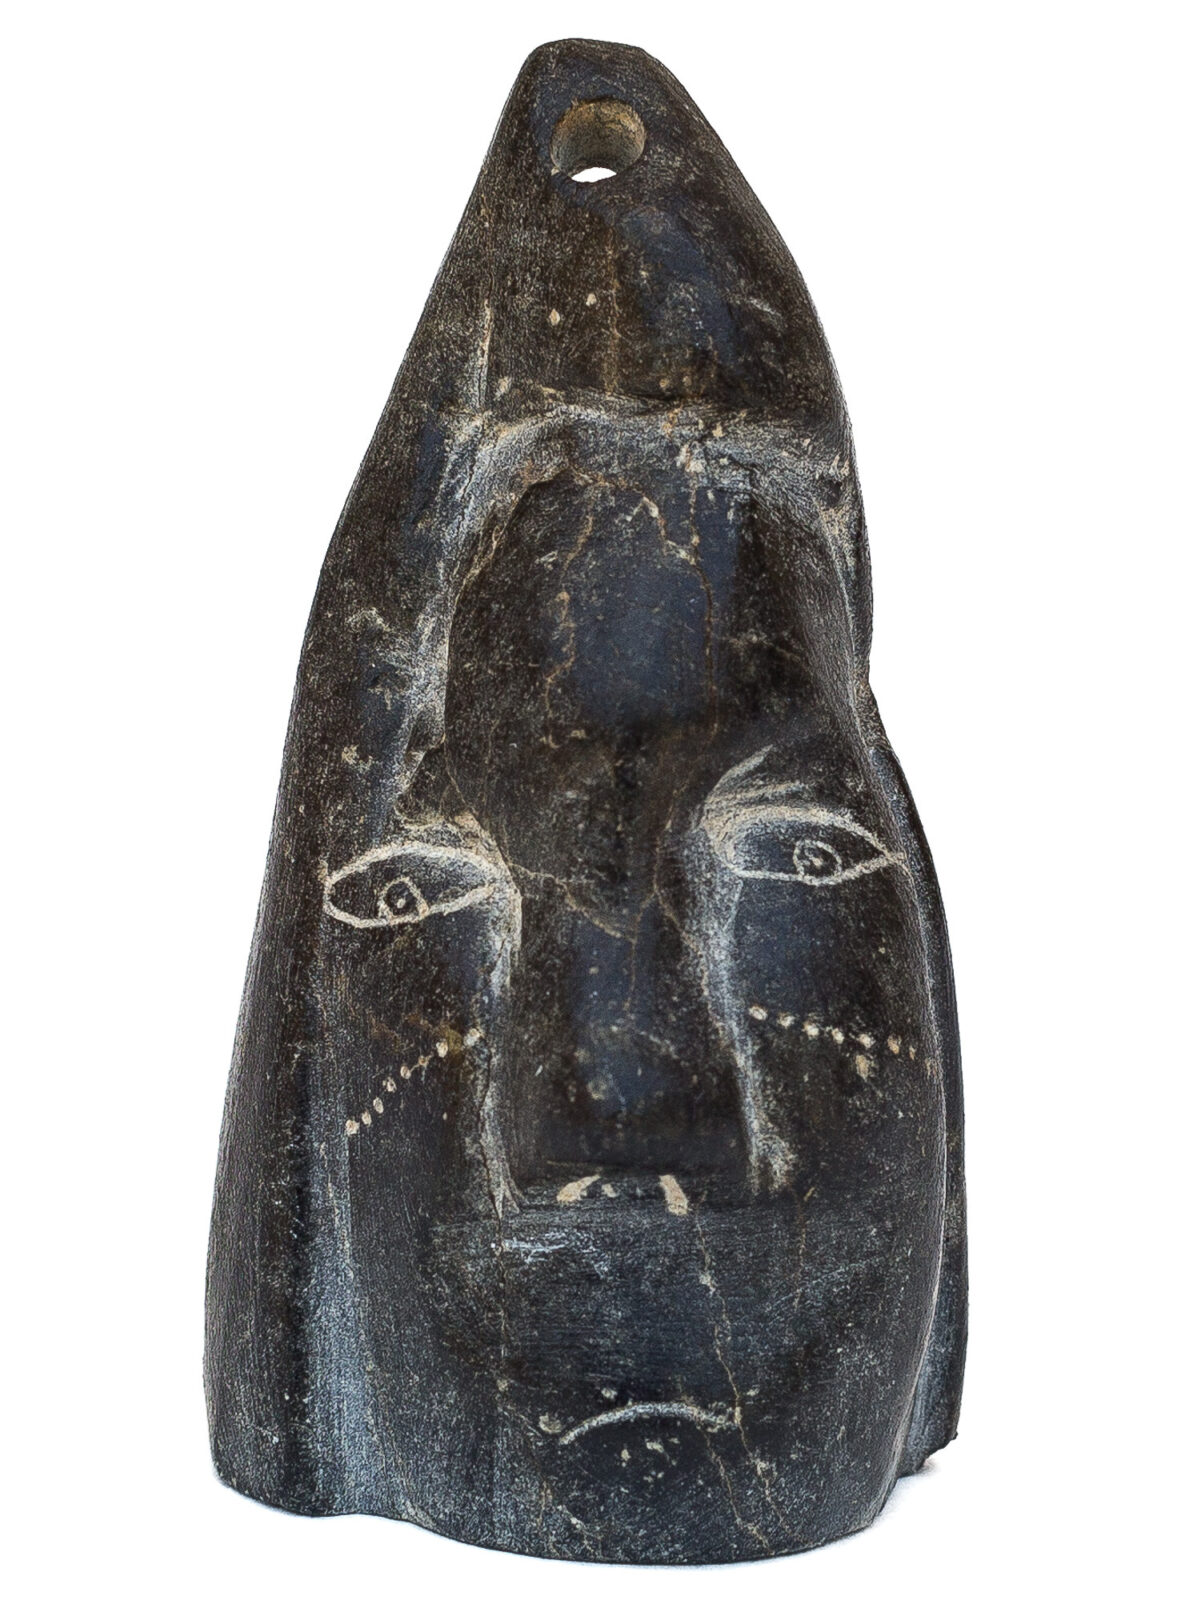 Josie Pamiutu Papialuk - untitled (pendant)